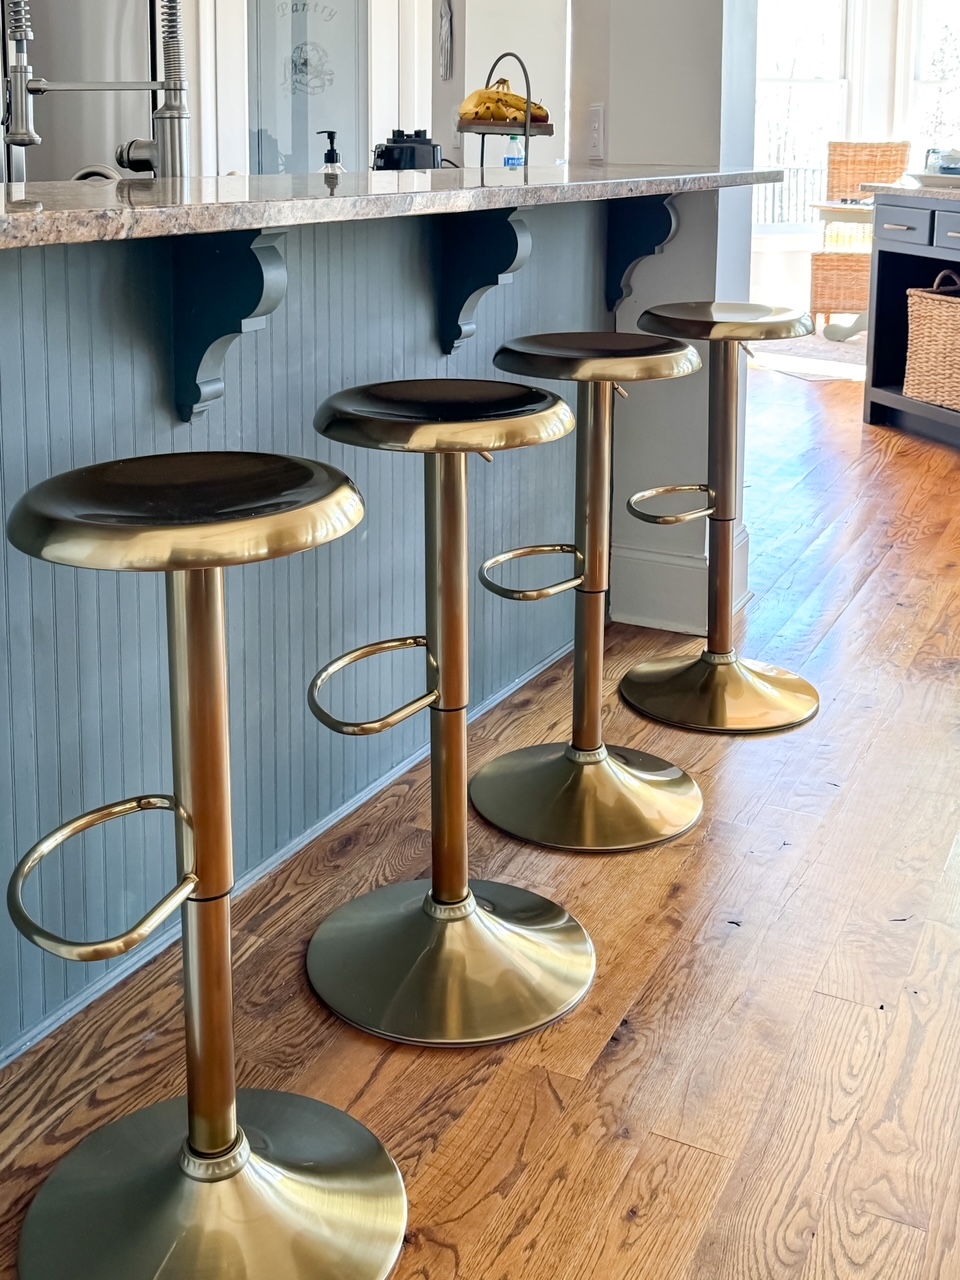 bar stools lined up at kitchen island